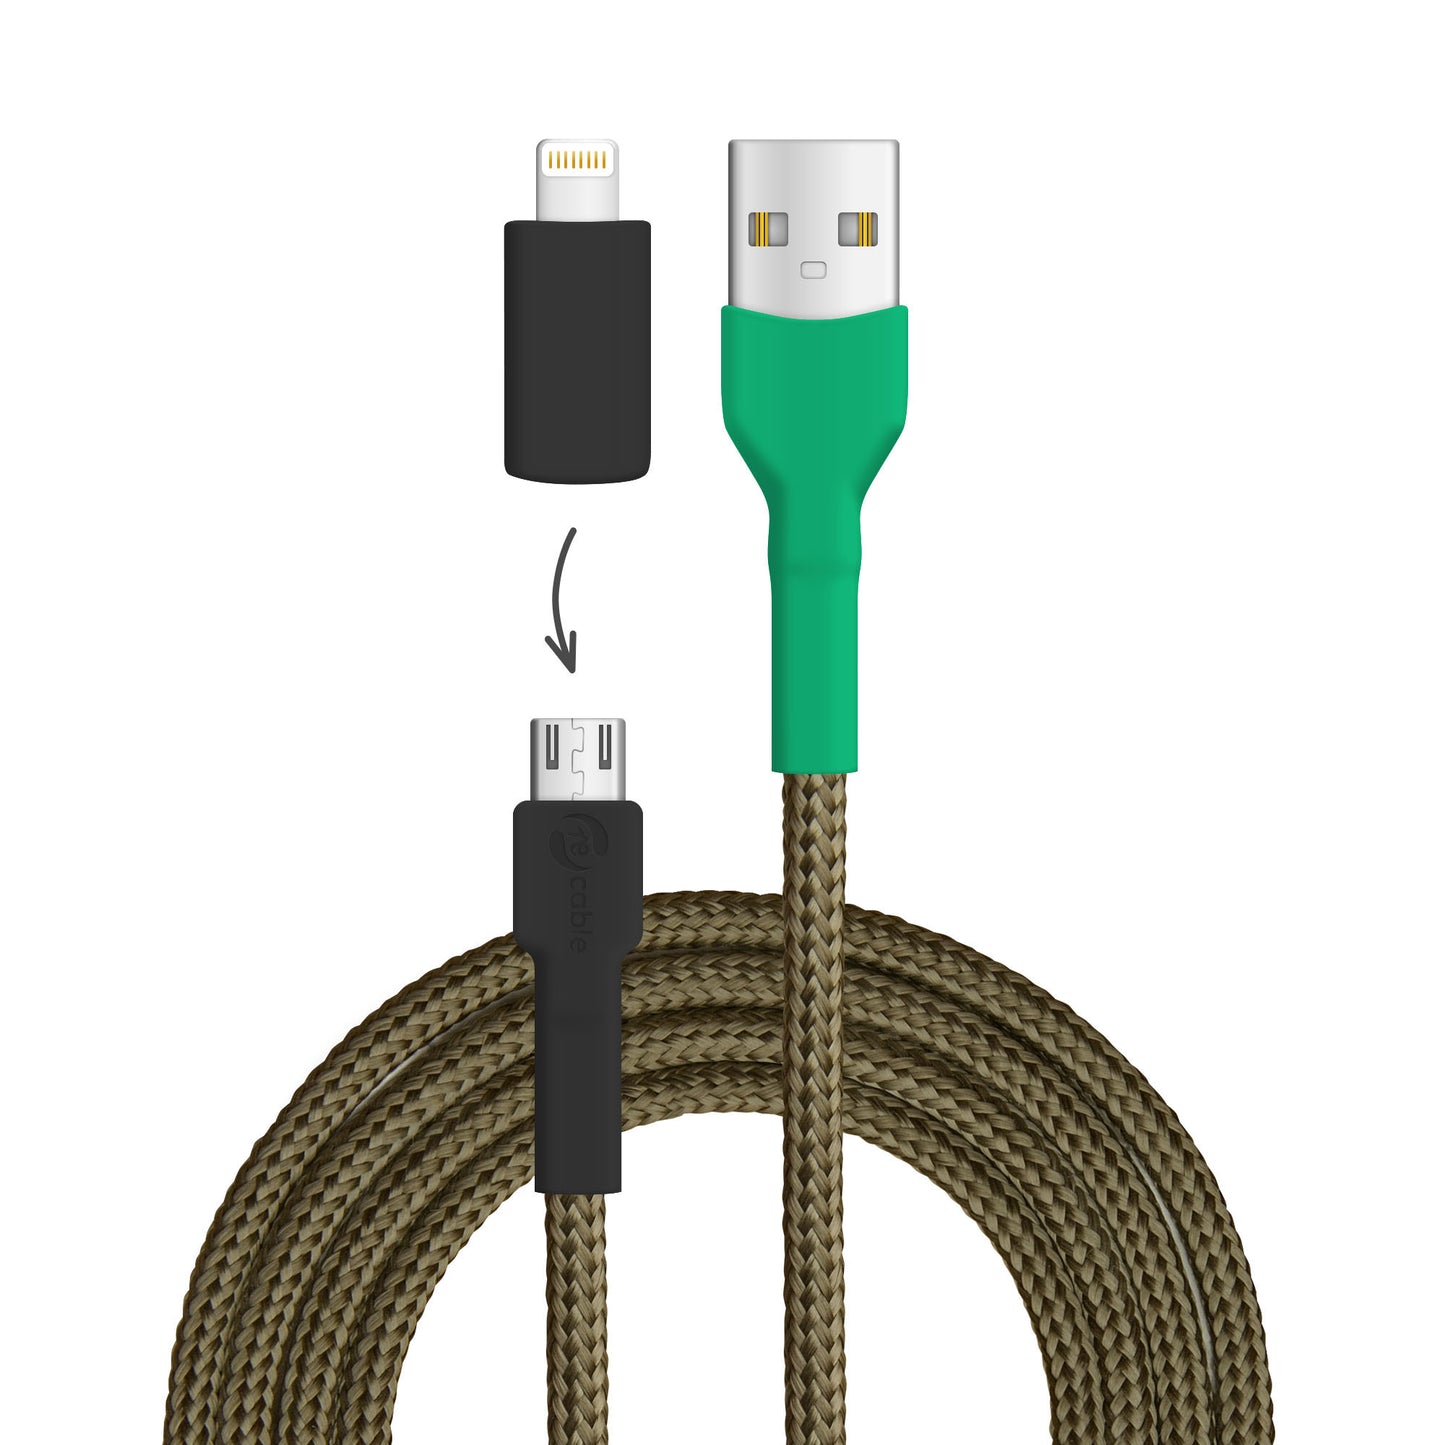 USB-Kabel, Design: Kakapo, Anschlüsse: USB A auf Micro-USB mit Lightning Adapter (nicht verbunden)